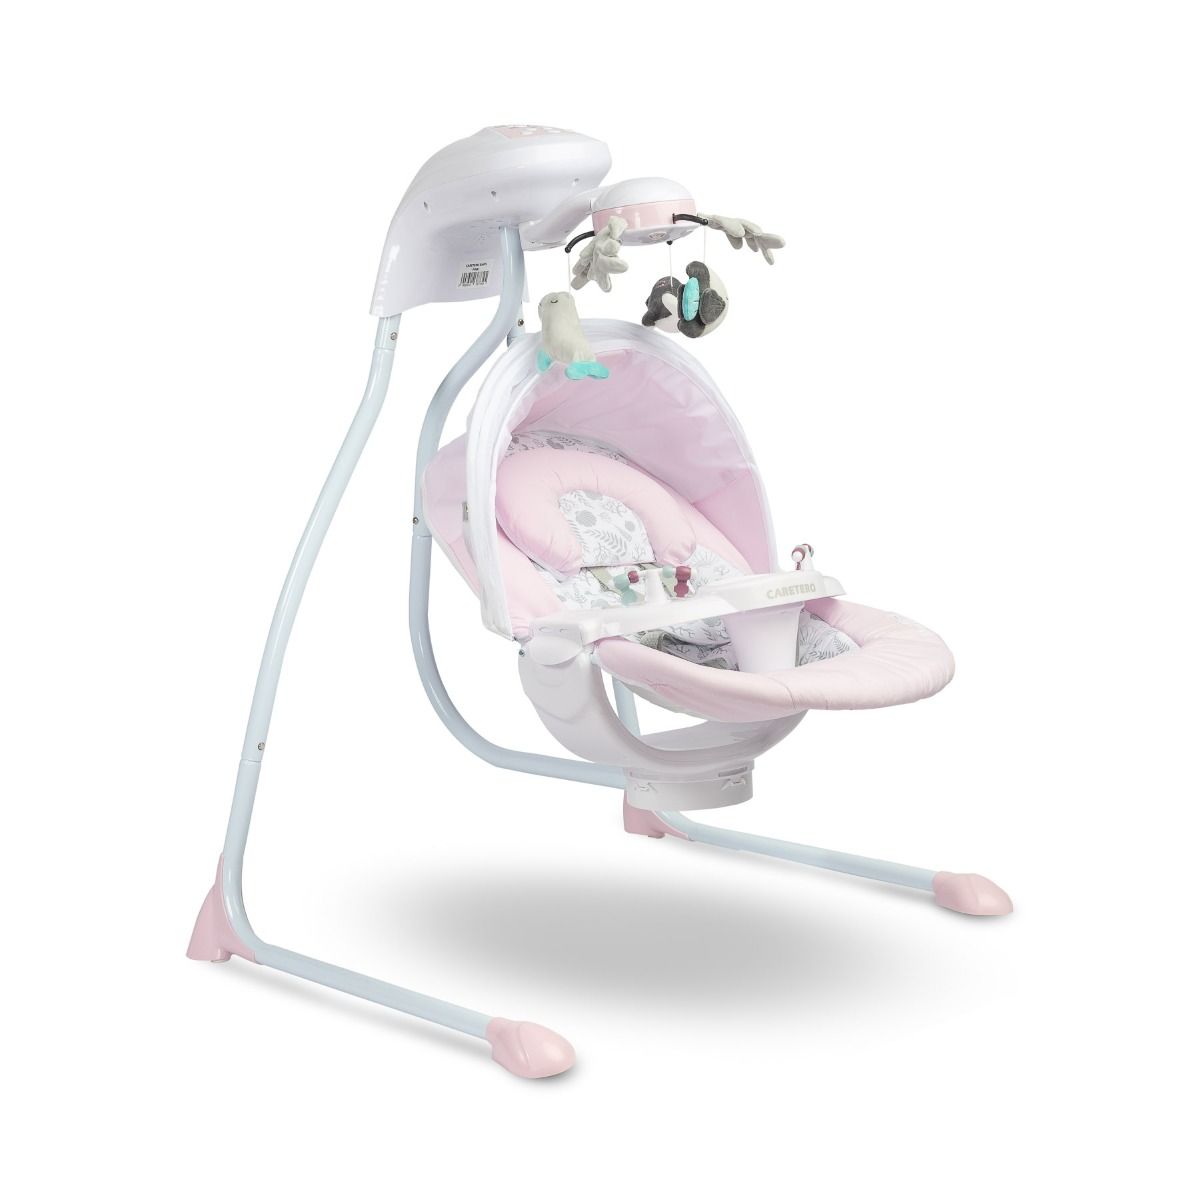 En riesgo Absorbente perdonar Columpio eléctrico para bebés Raffi - Color rosa - Shopmami